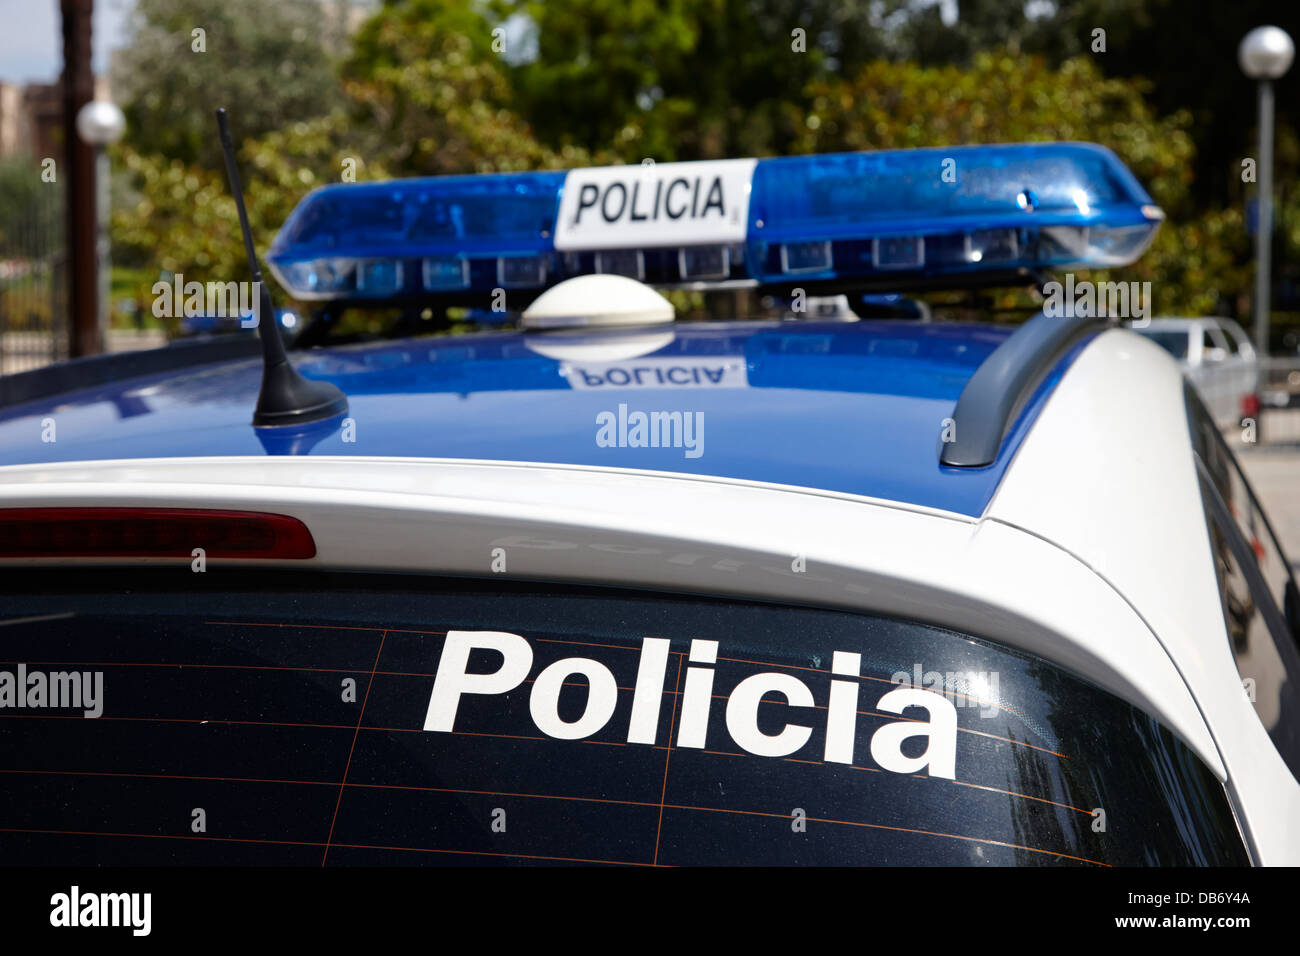 Policia guardia urbana voitures de patrouille Barcelone Catalogne Espagne Banque D'Images